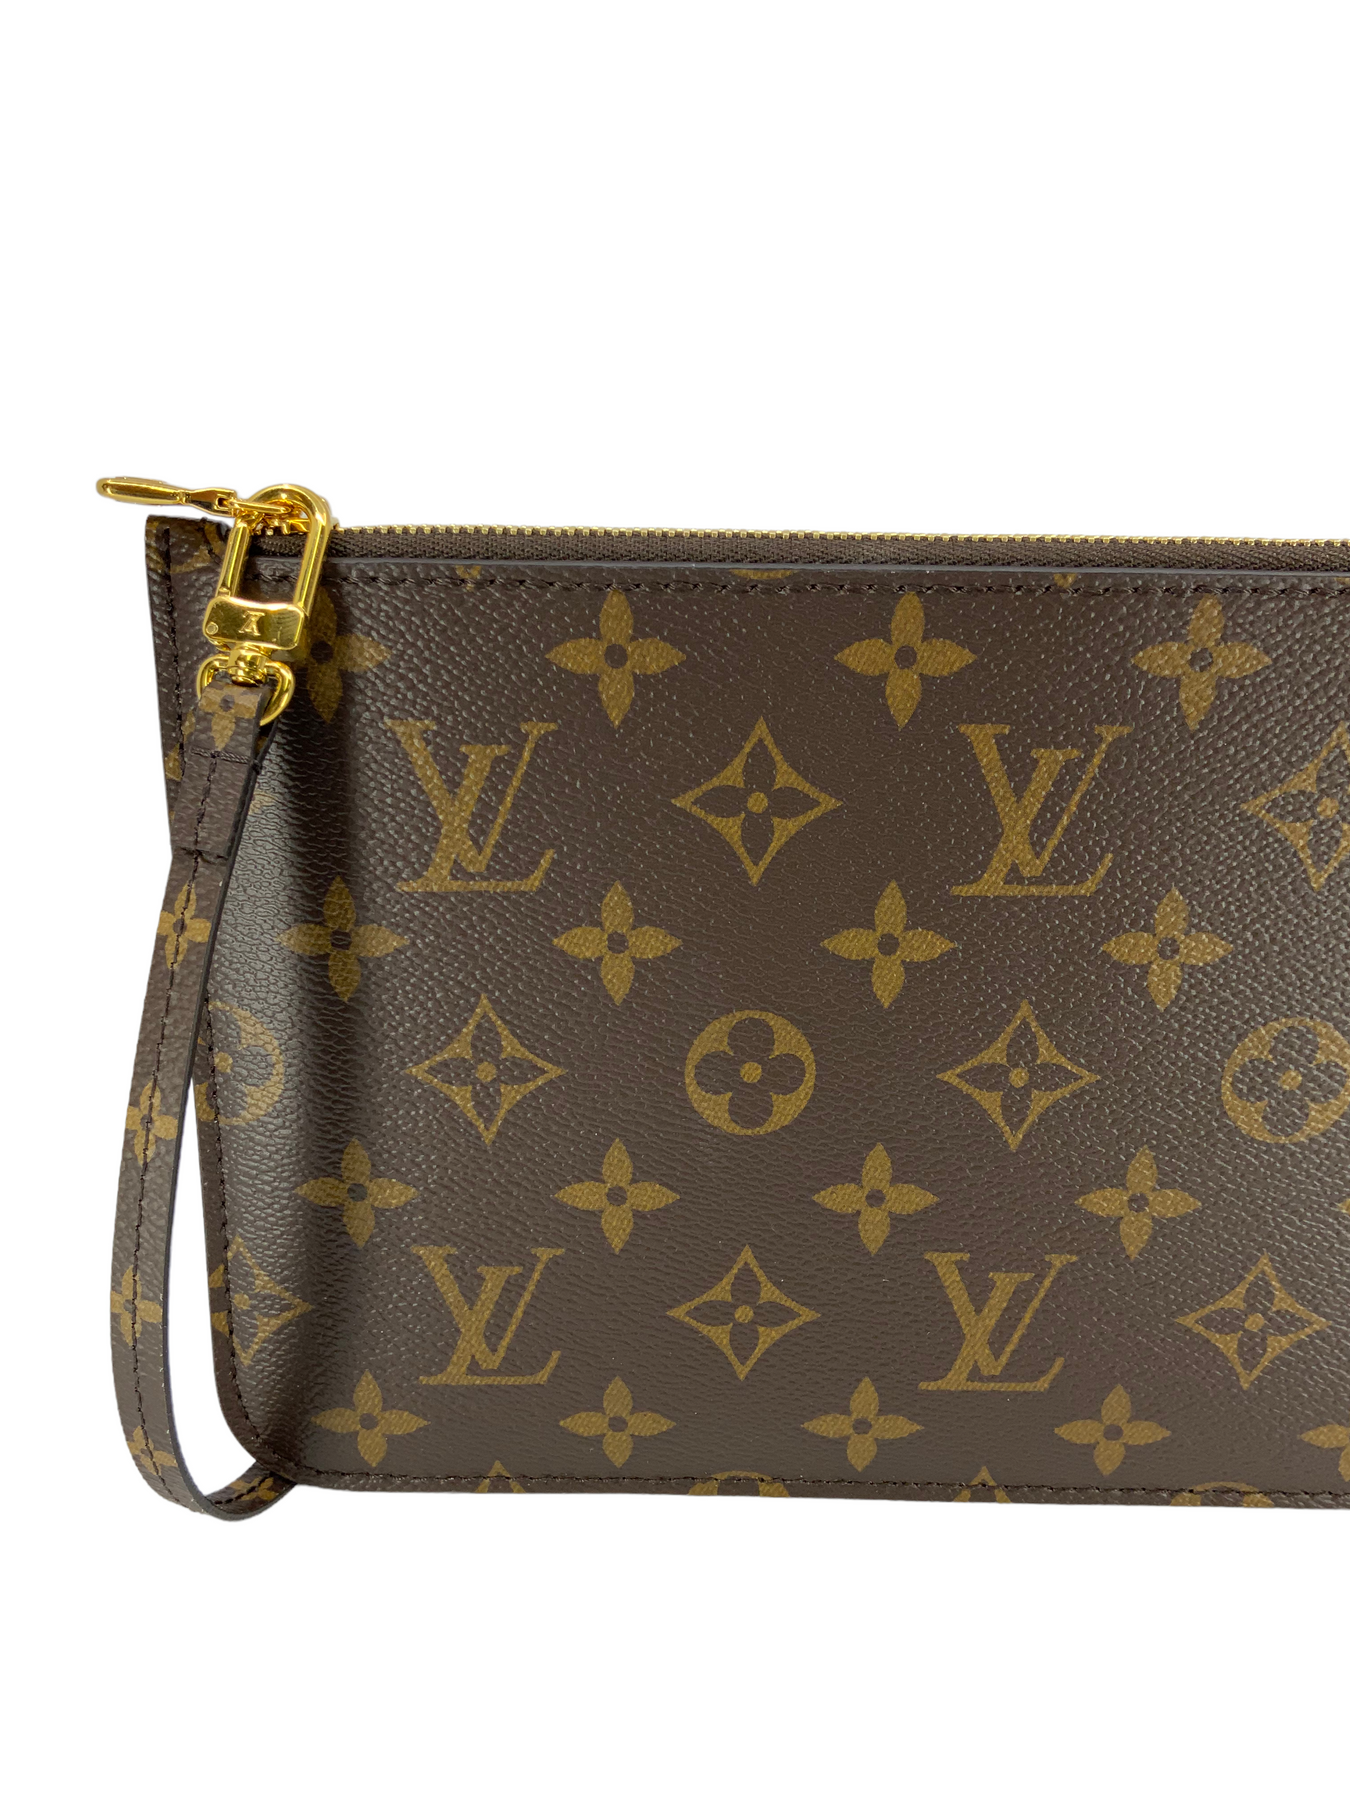 Louis Vuitton Monogram Teddy Neverfull mm Pochette Wristlet New